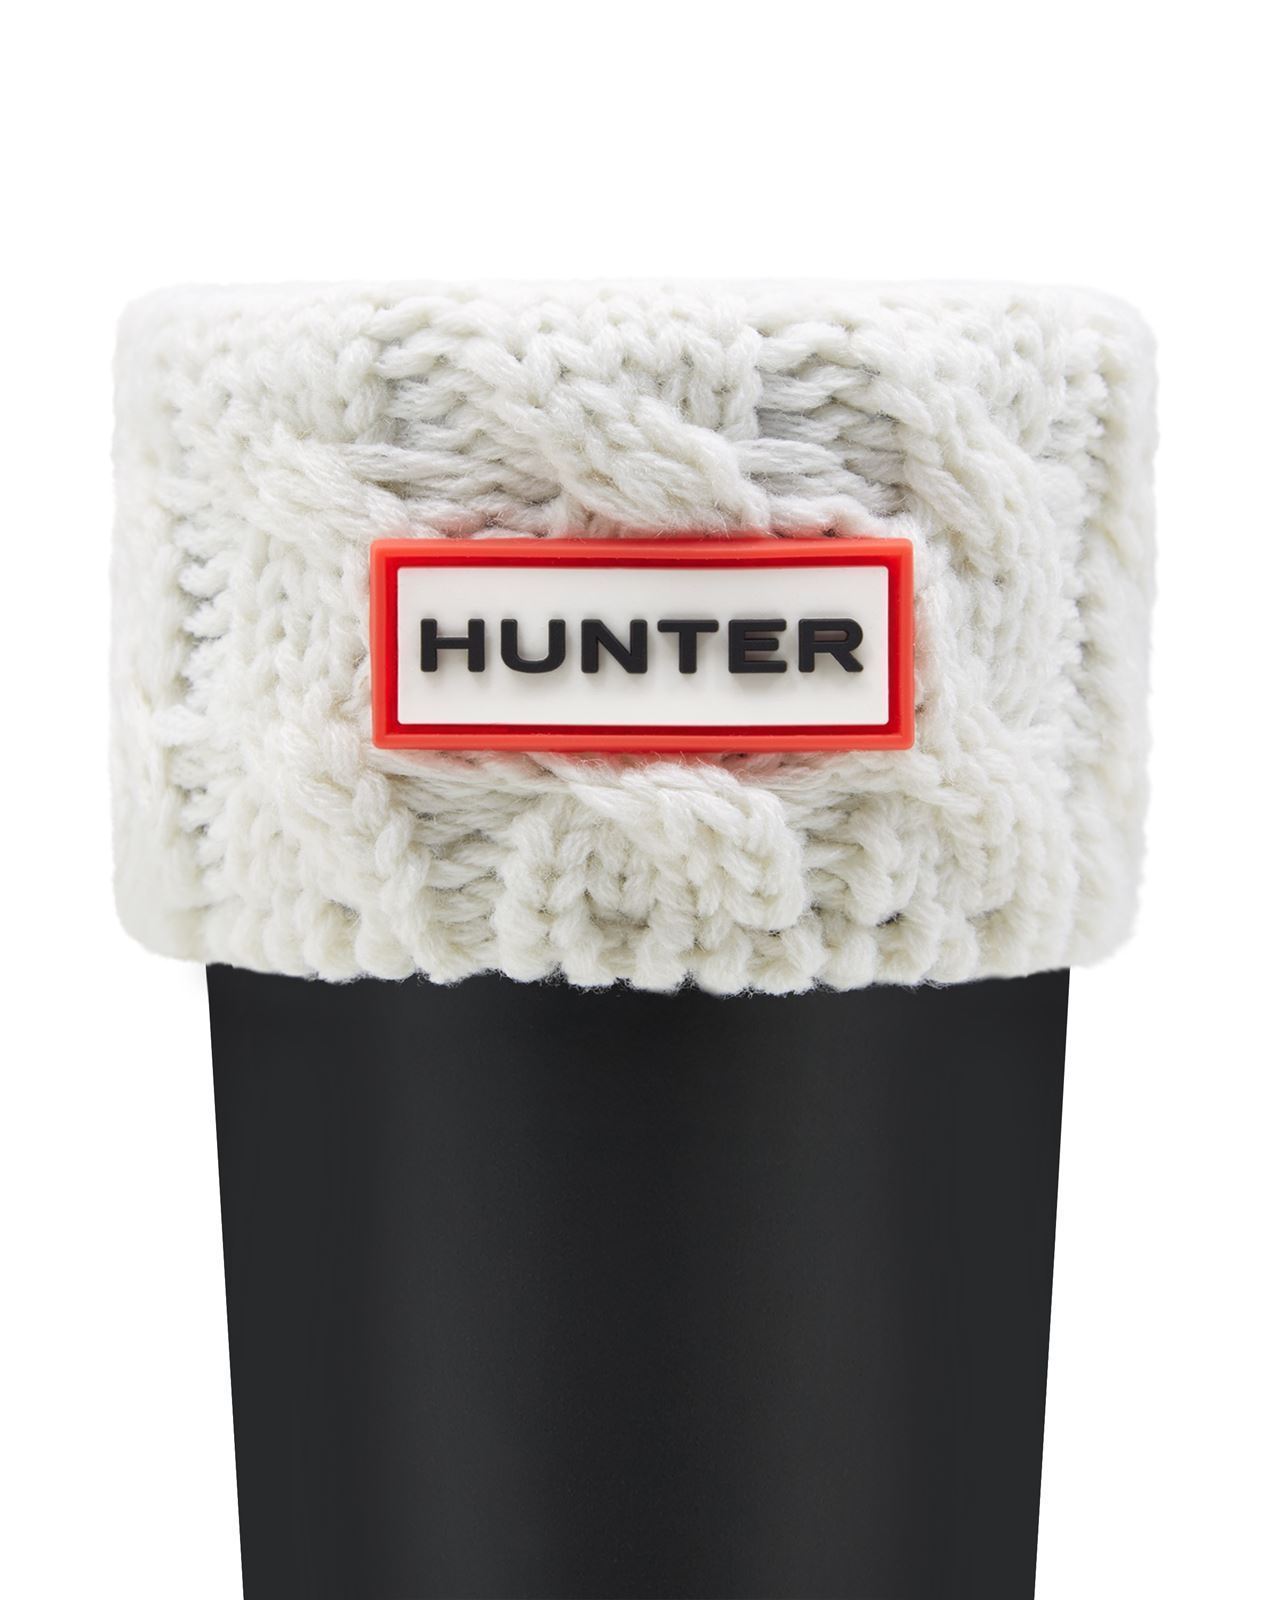 Hunter Sock for Children's Boots White - Image 1